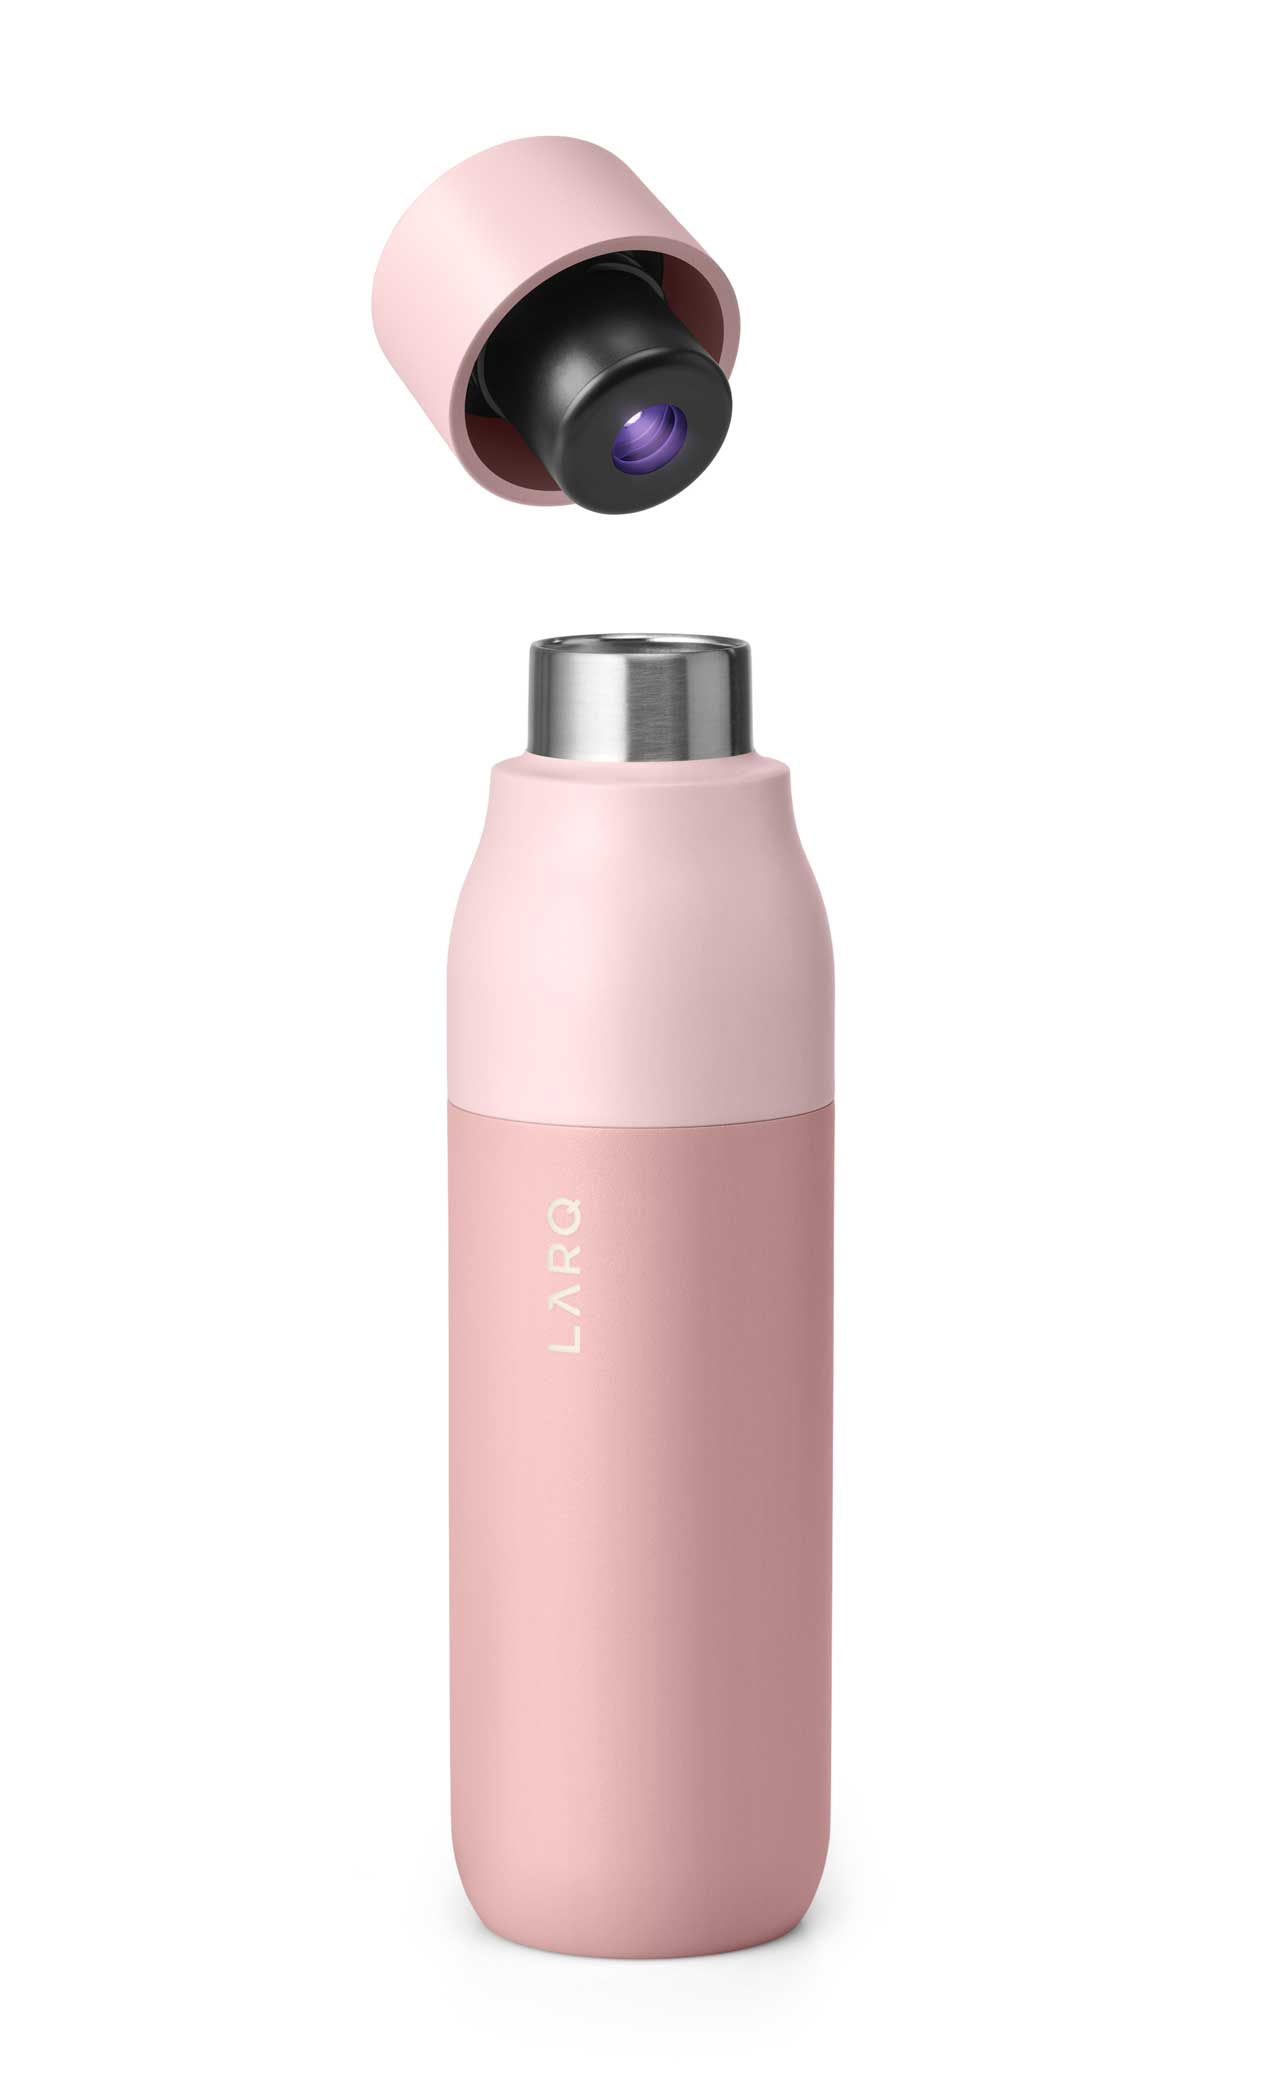 https://design-milk.com/images/2020/05/LARQ-Bottle-self-cleaning-water-bottle-23.jpg